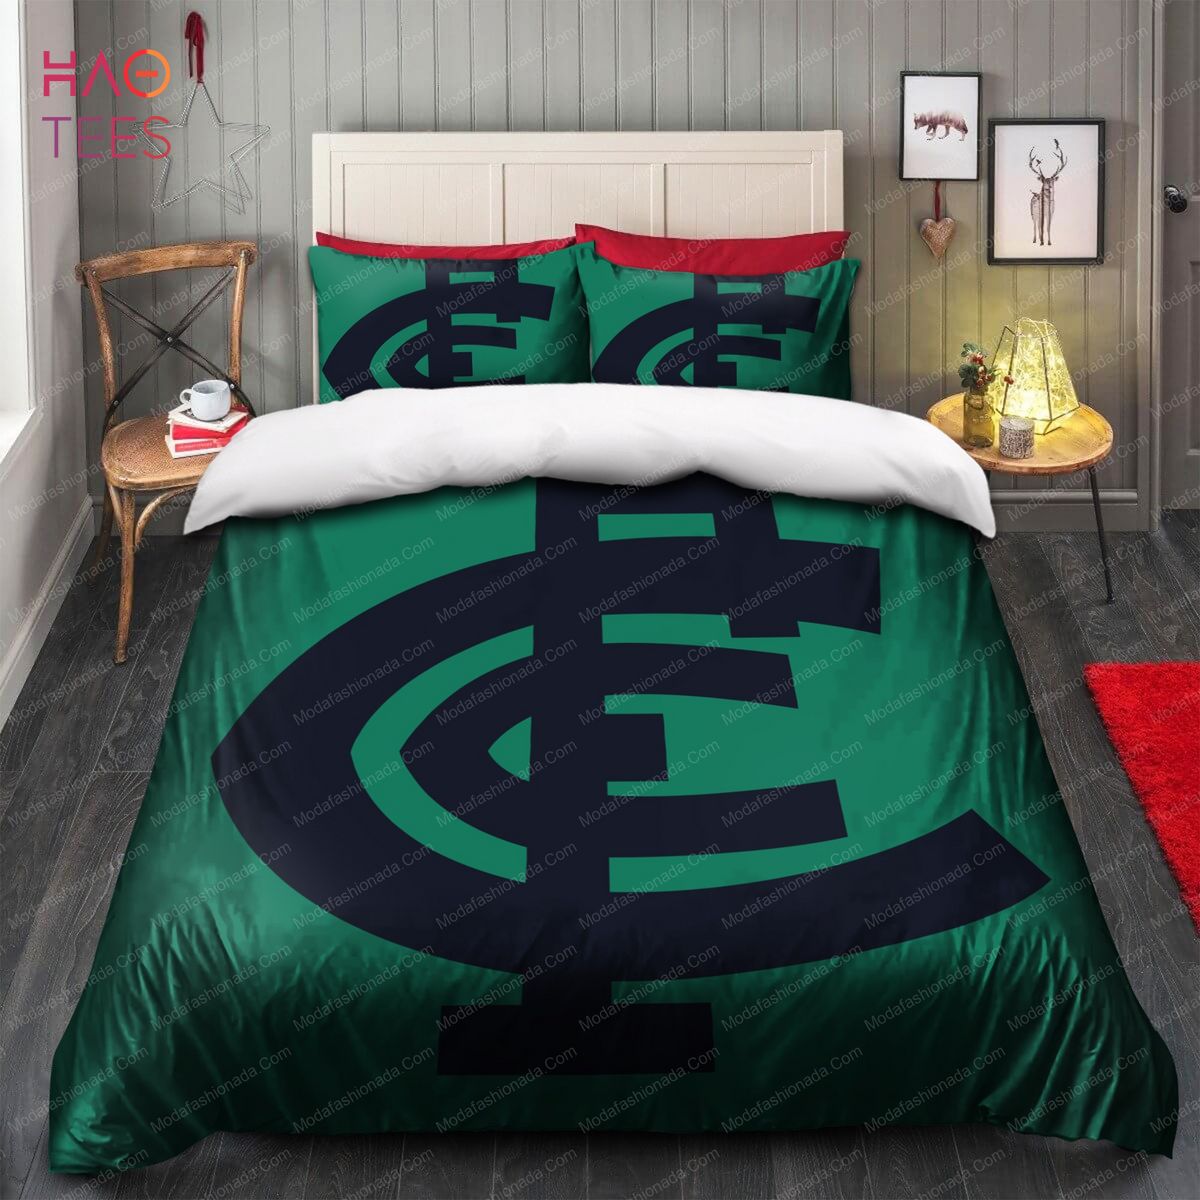 Carlton Football Club Logo Limited Edition Bedding Sets